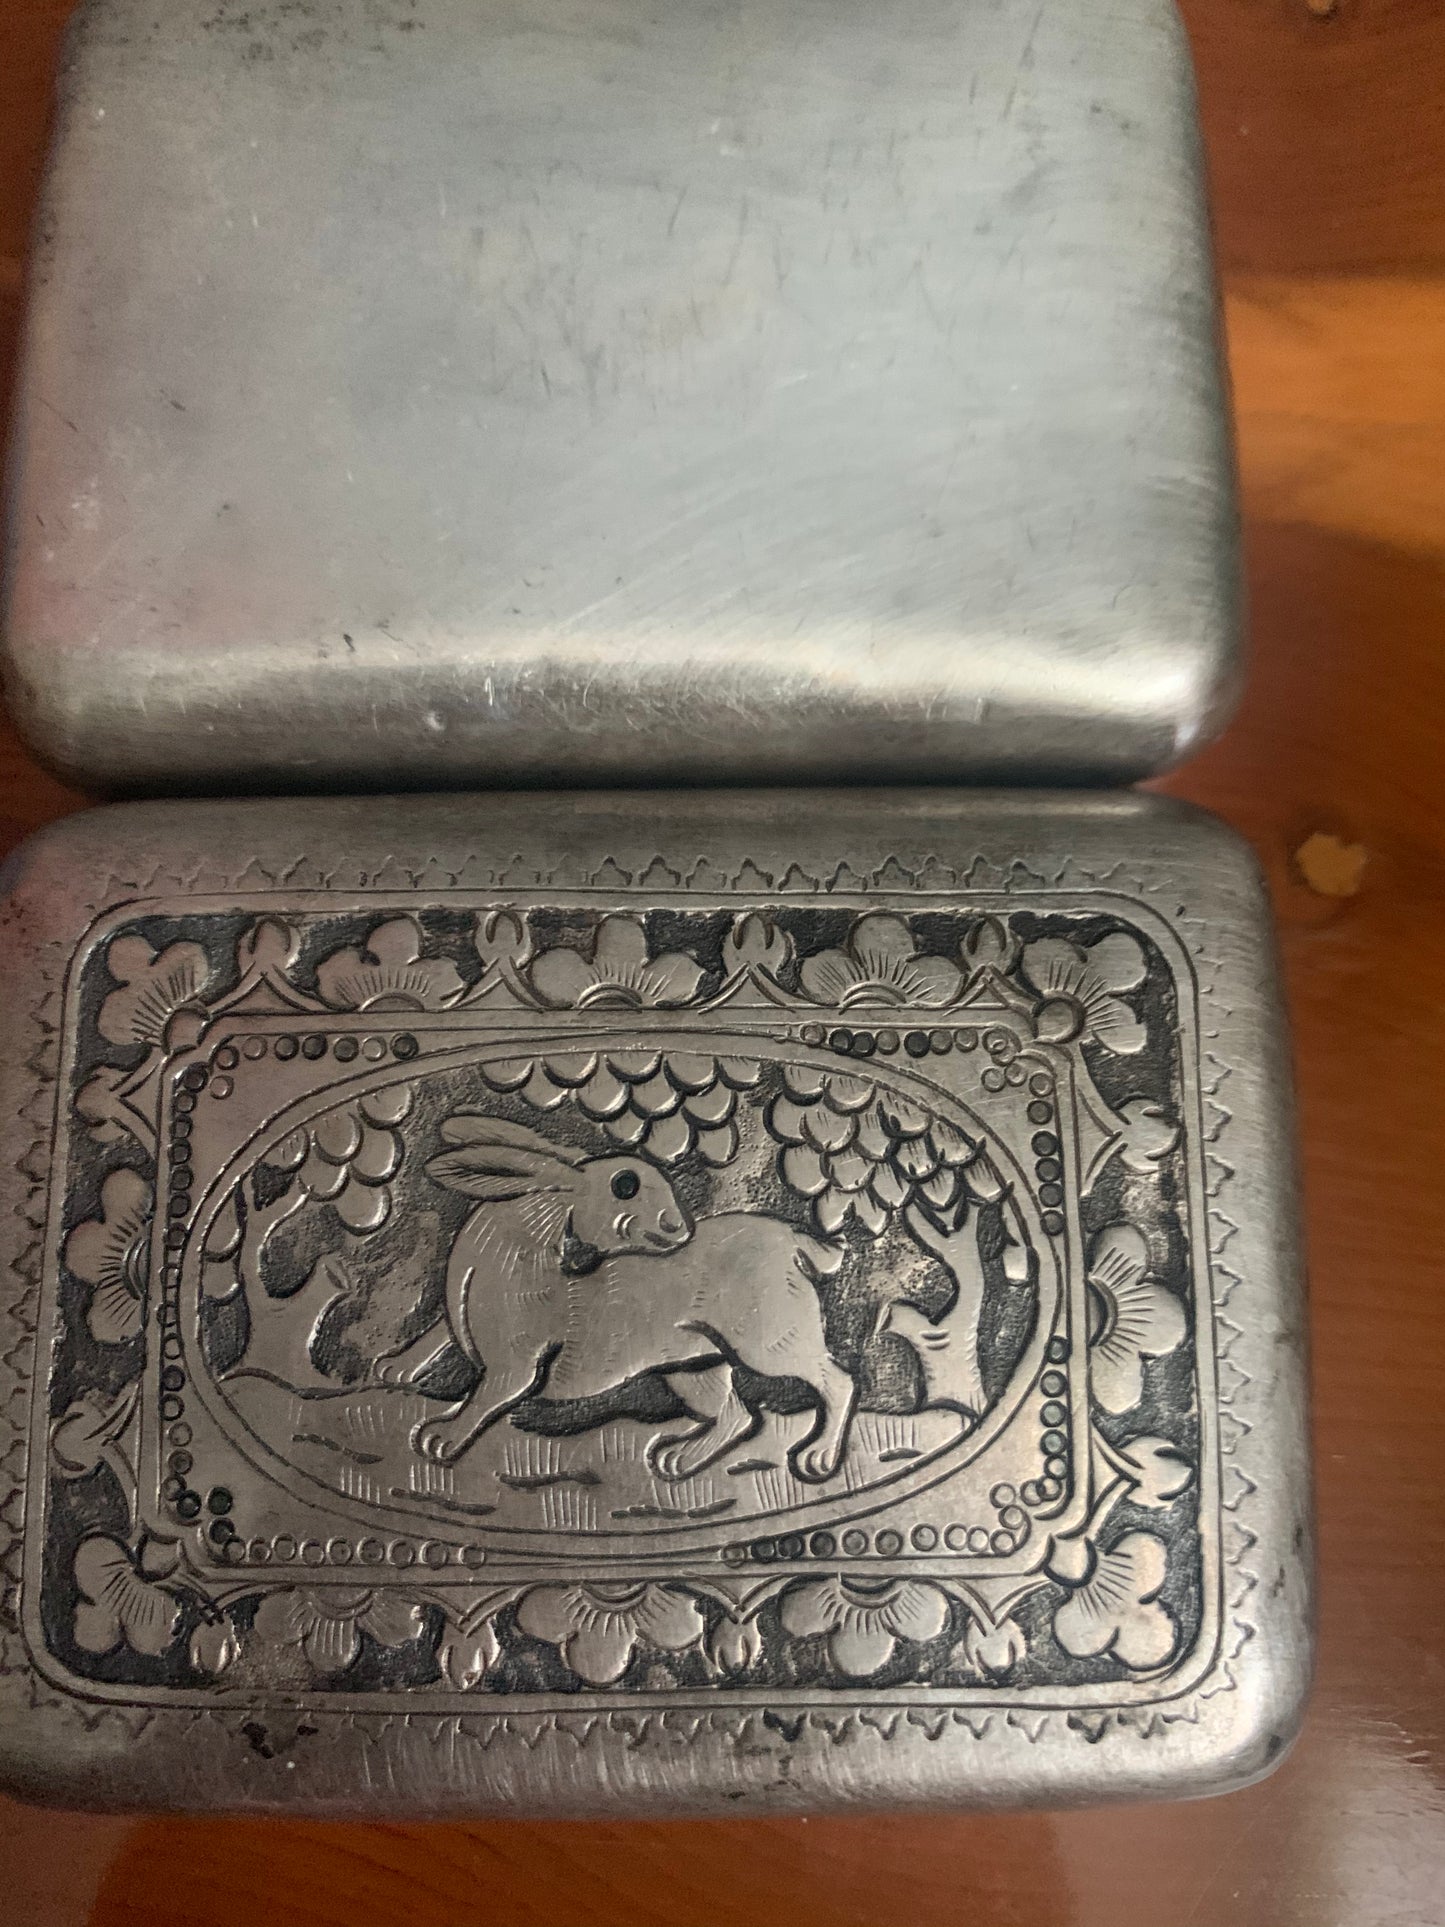 A silver box